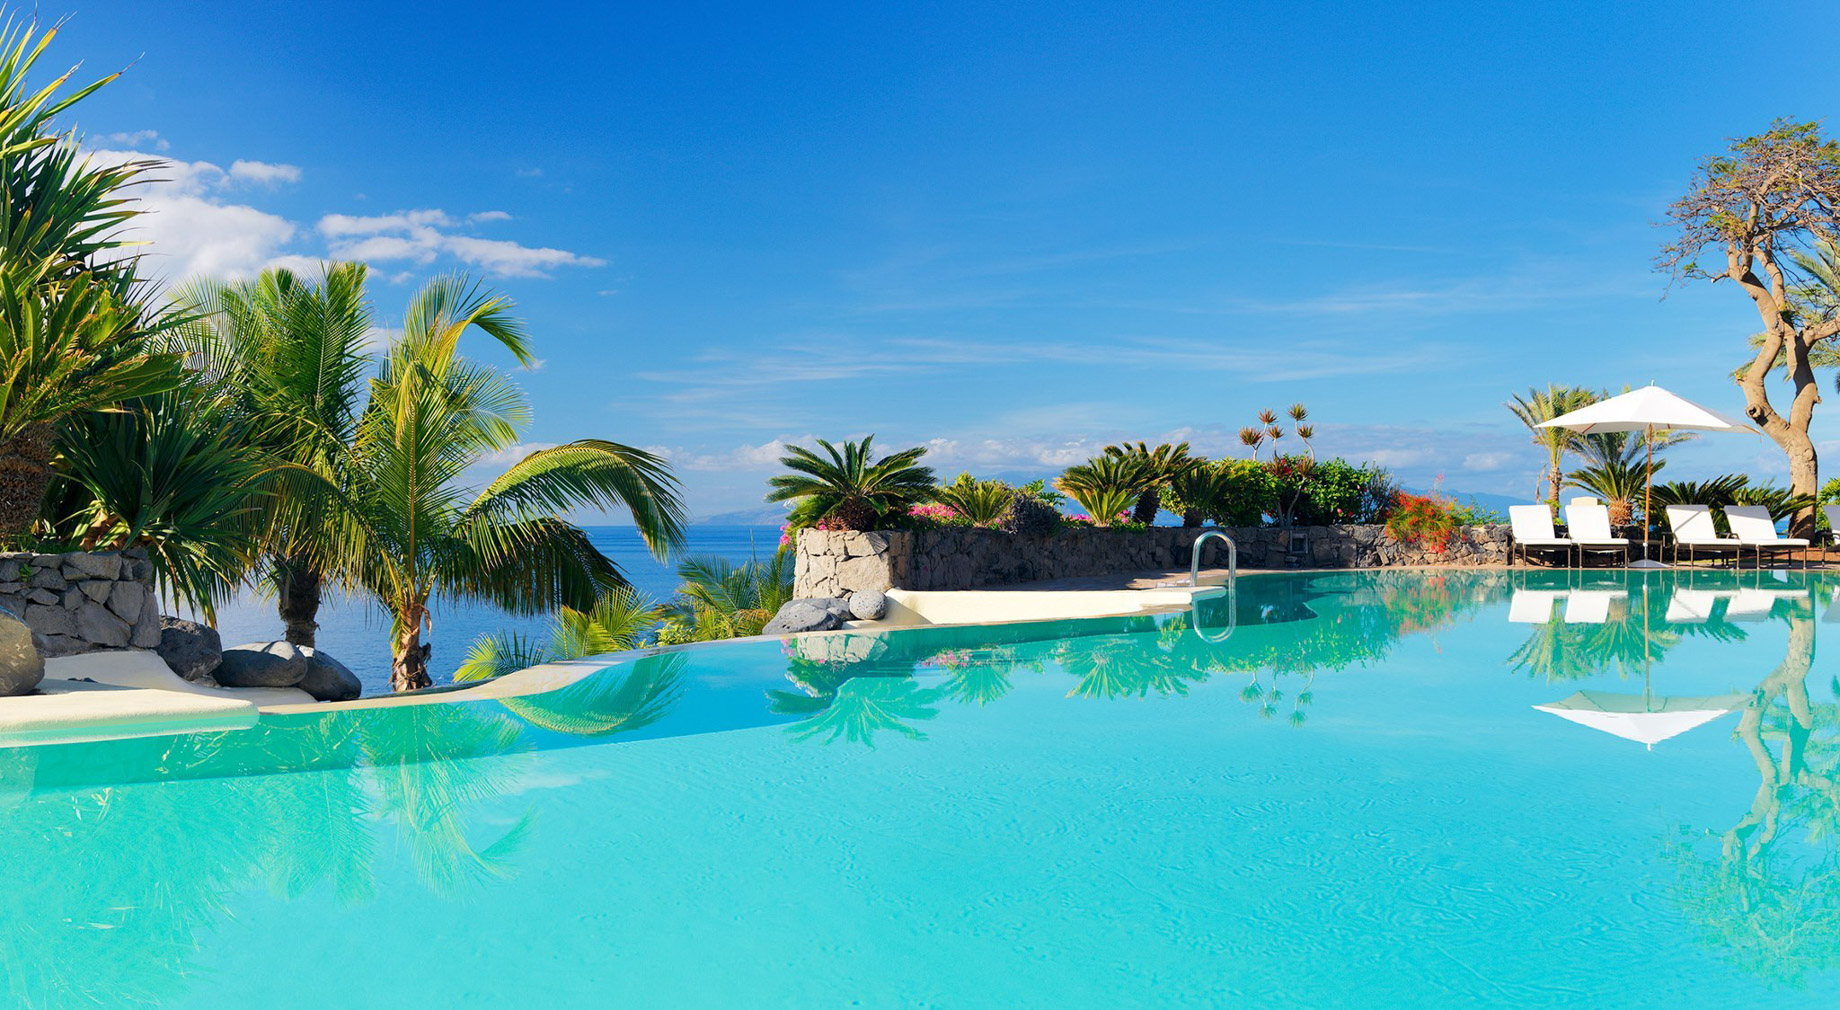 The Ritz-Carlton, Abama Resort - Santa Cruz de Tenerife, Spain - Infinity Pool